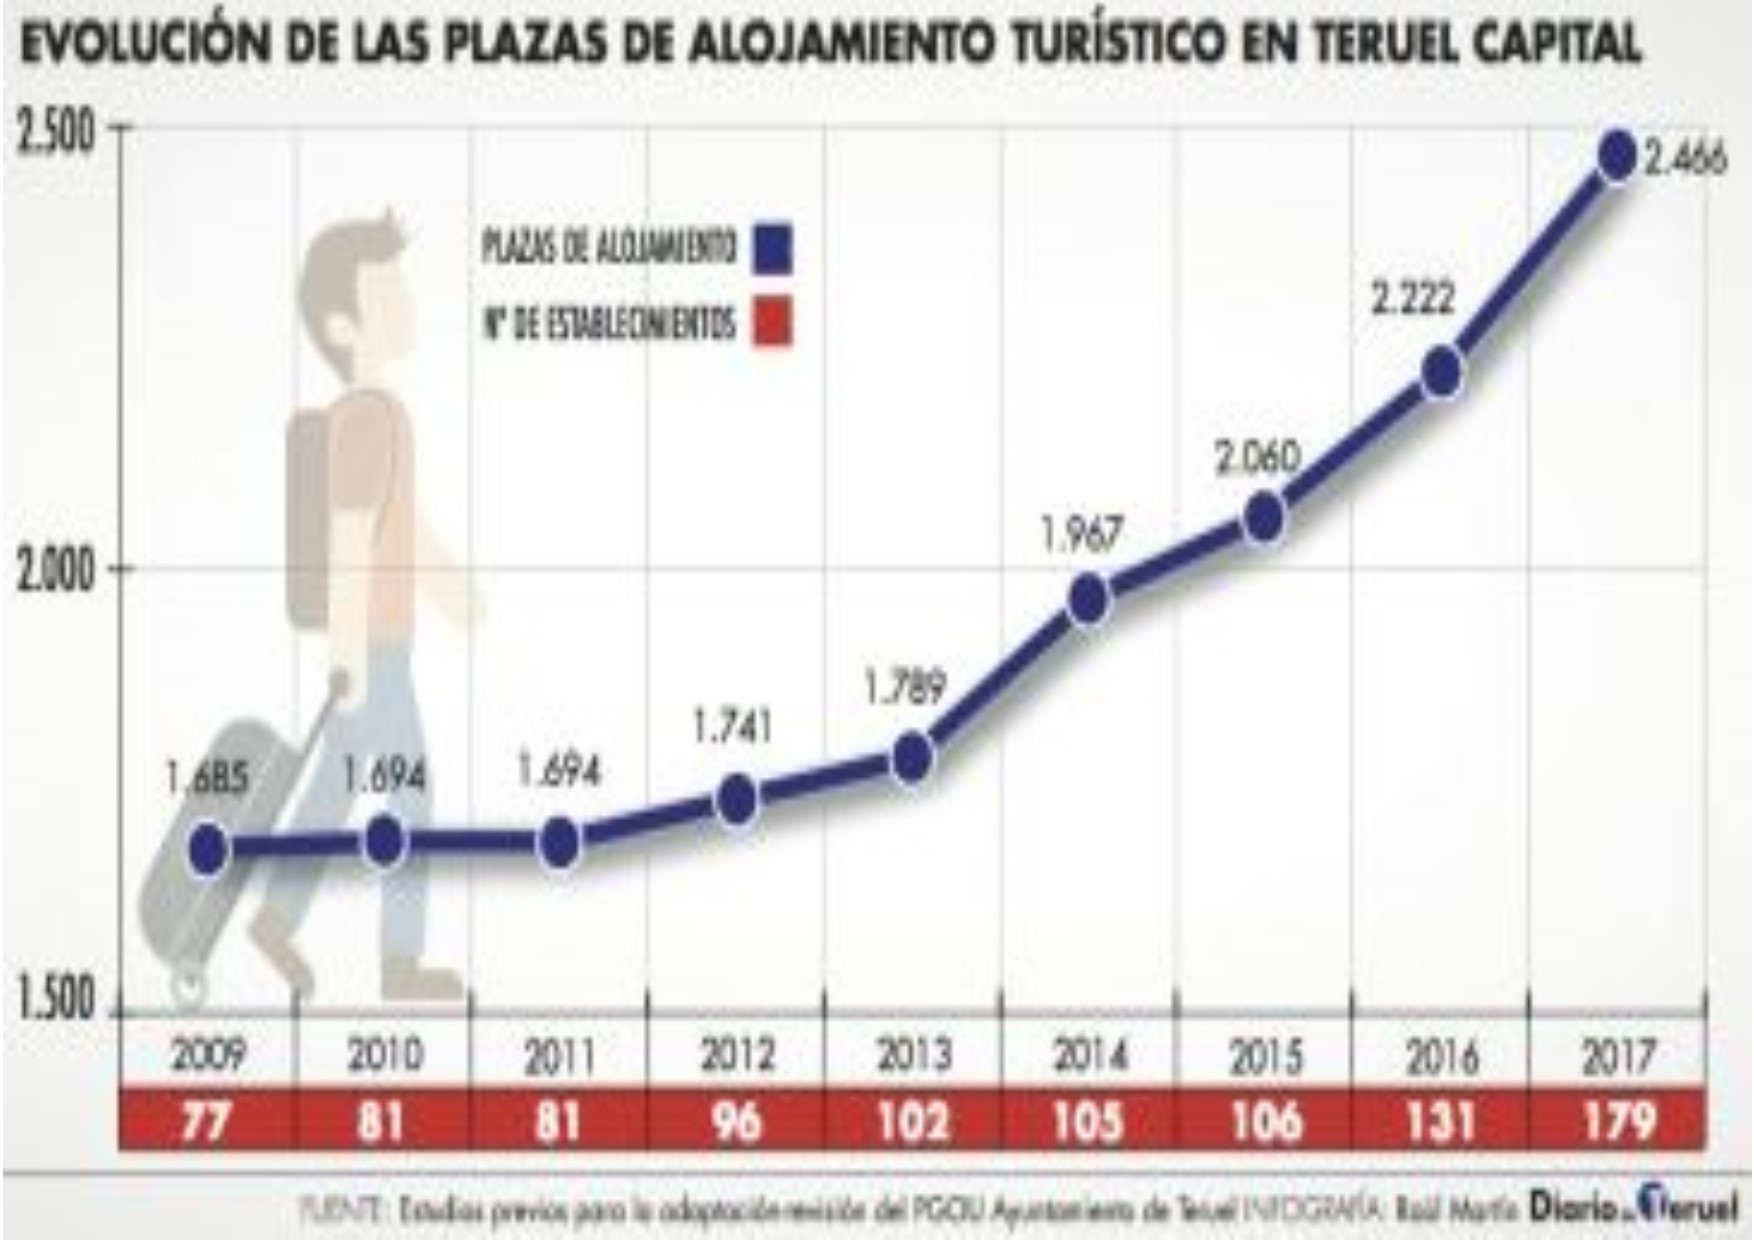 Noticia Diario de Teruel: El número de plazas de alojamientos turísticos en la ciudad de Teruel aumenta un 46% en nueve años